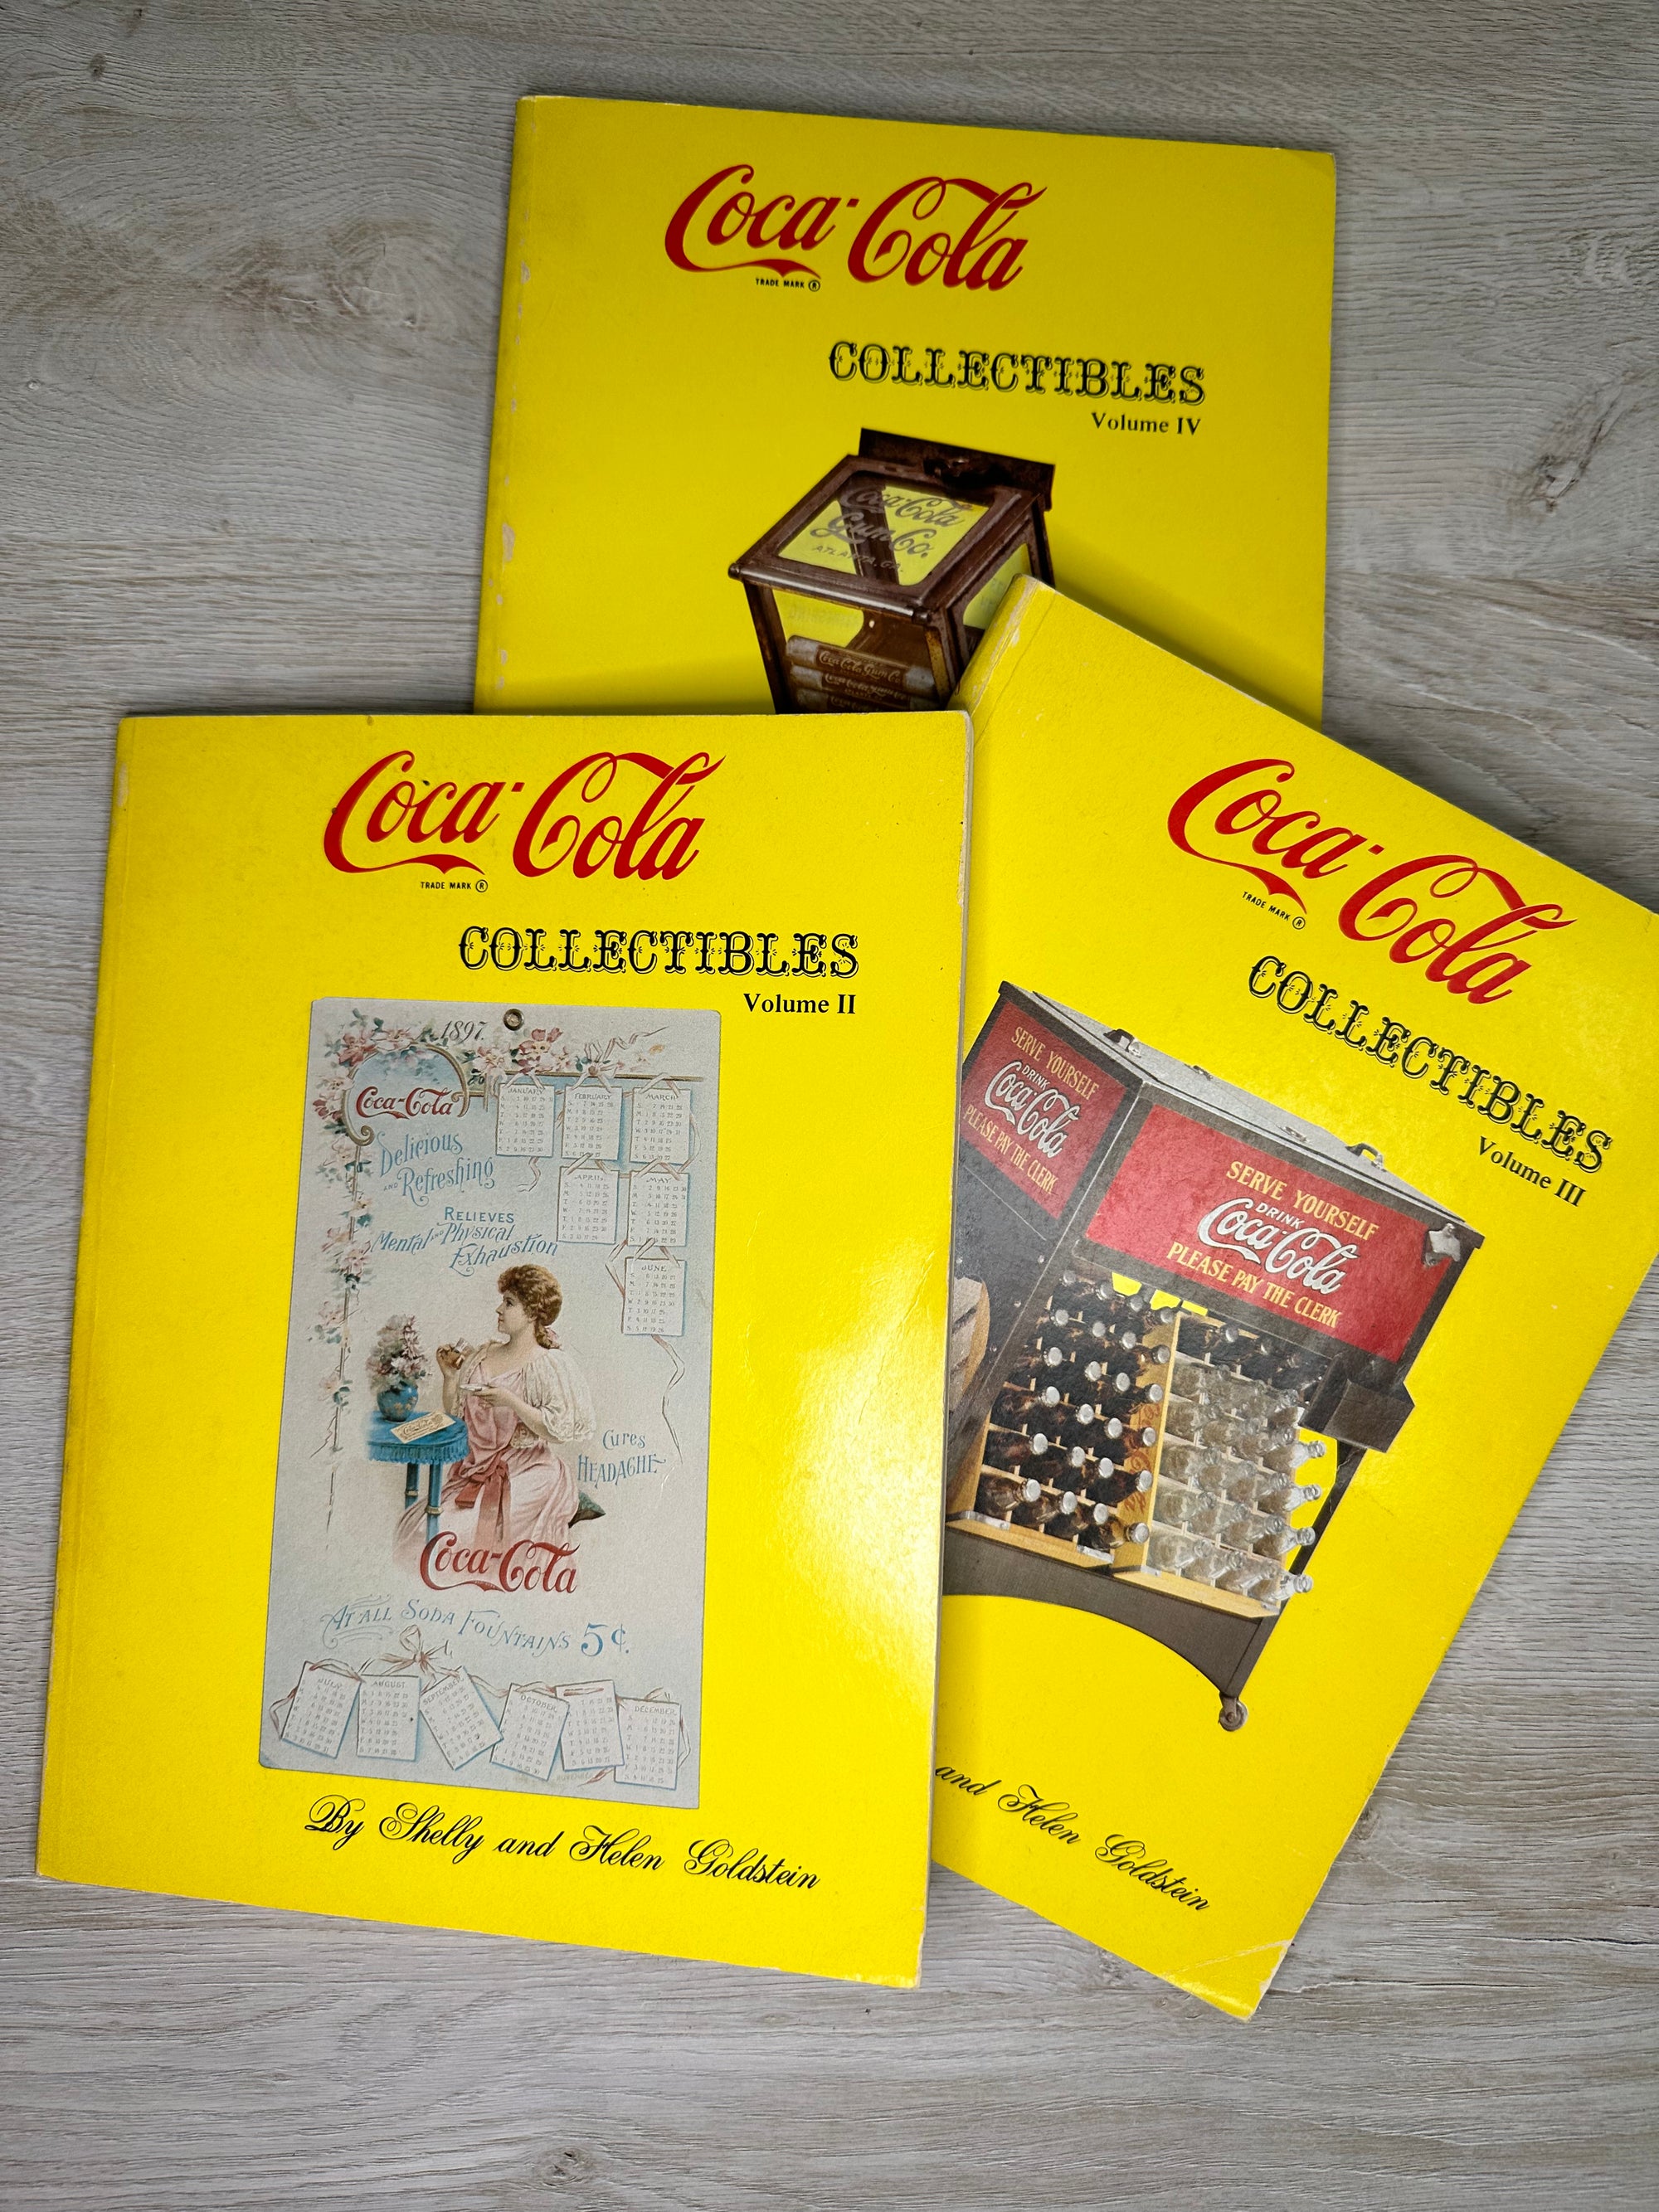 Coca Cola Collectibles books